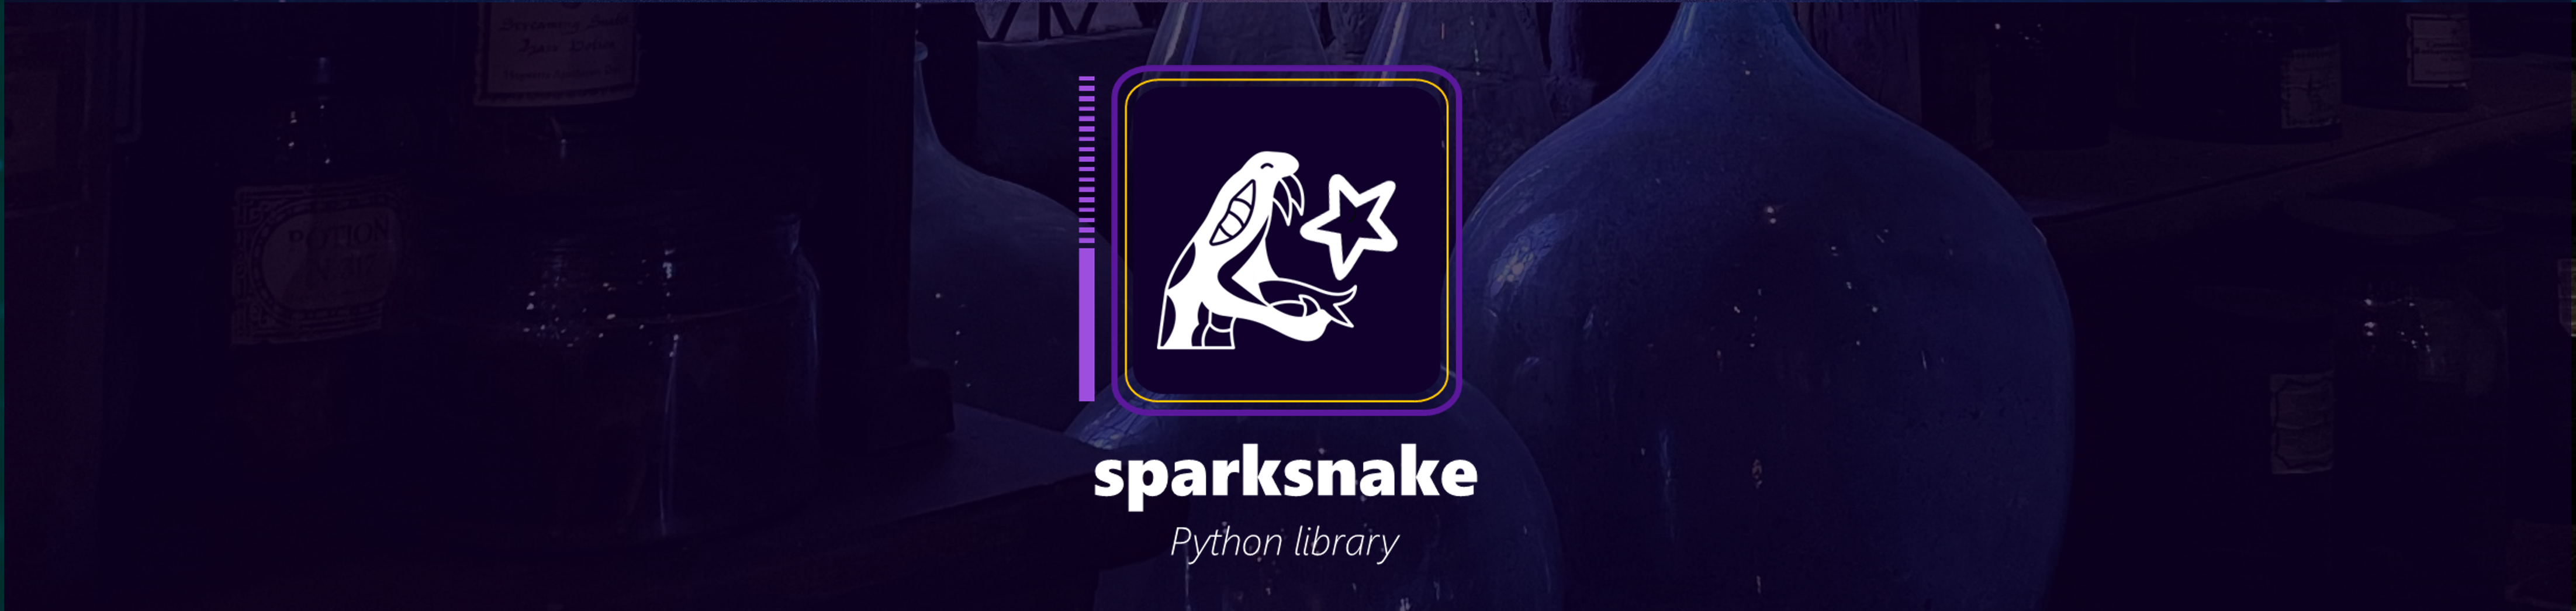 sparksnake-logo